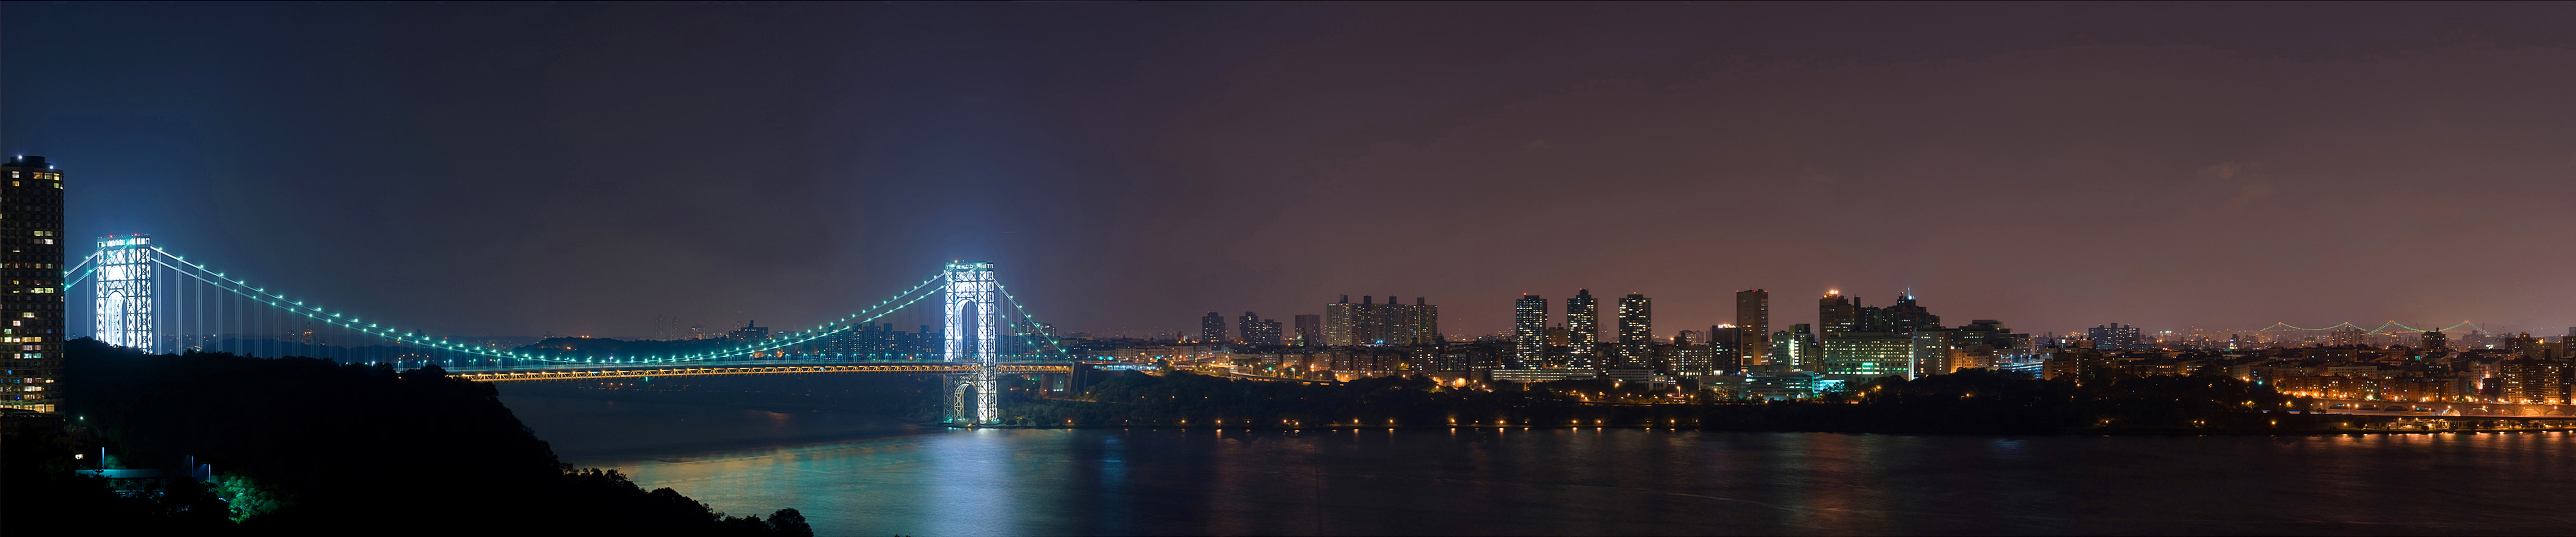 Nếu bạn đang tìm kiếm hình nền đa màn hình của New York với khung cảnh đẹp và ấn tượng, George Washington Bridge vào ban đêm là lựa chọn tuyệt vời cho bạn! Bạn sẽ được chiêm ngưỡng những loạt đèn LED lấp lánh trên cây cầu lịch sử này, tạo nên một khung cảnh đẹp tuyệt vời bao quanh với mức độ chi tiết tuyệt đỉnh và chất lượng hình ảnh cao. Hãy tải ngay hình nền đa màn hình New York đẹp nhất từ chúng tôi.